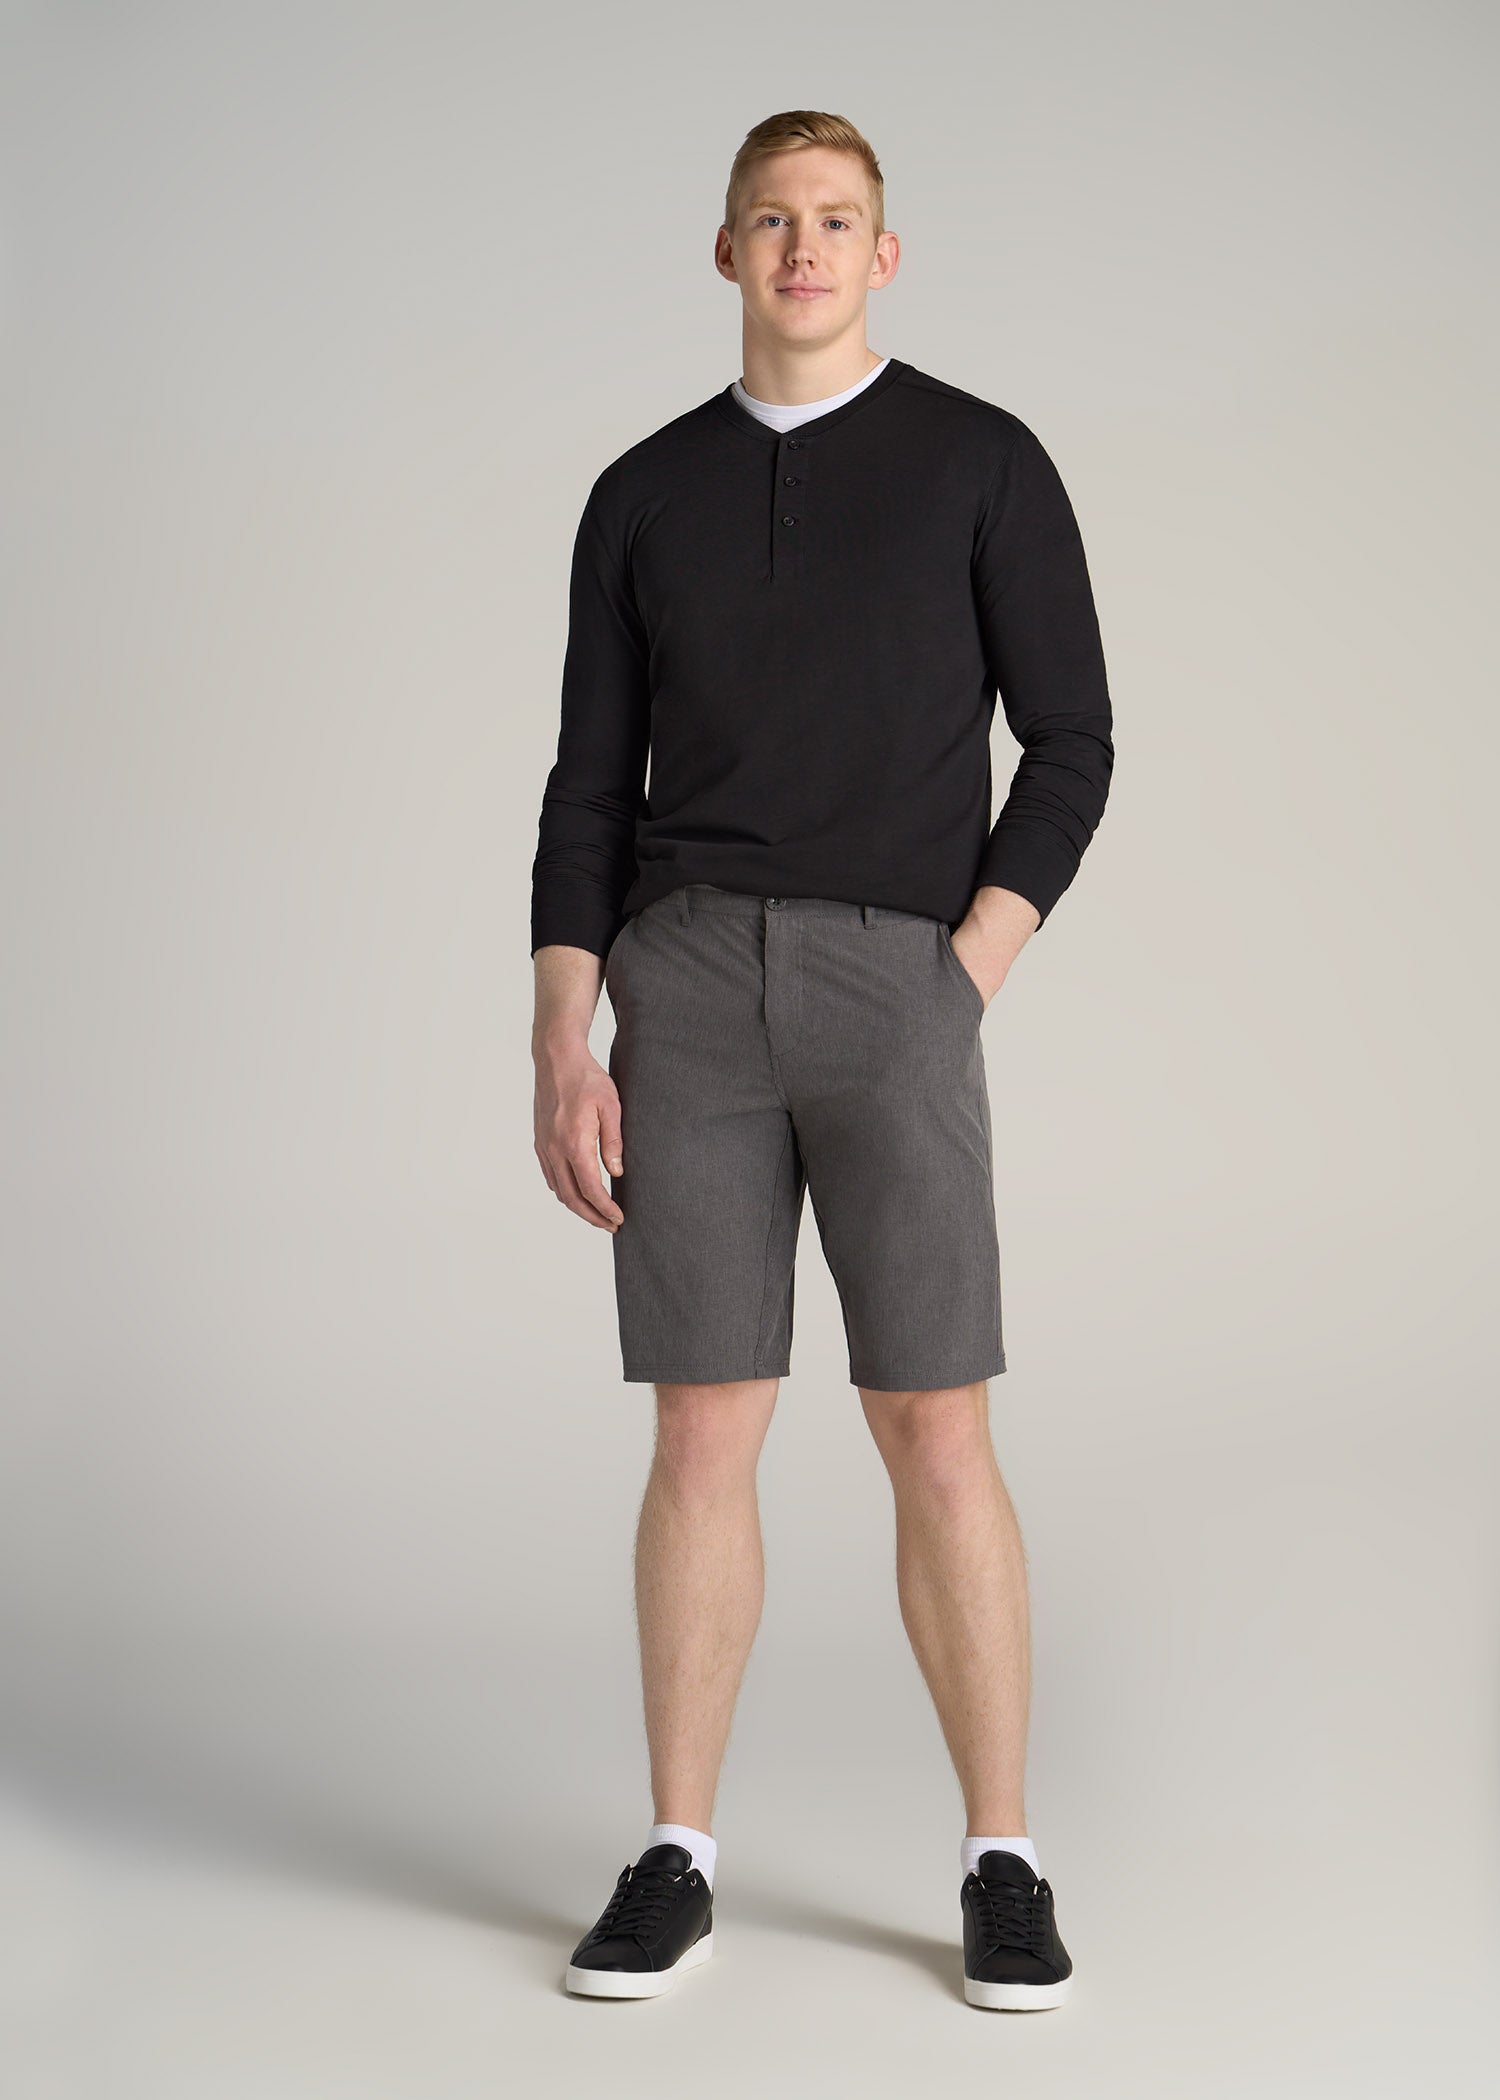 https://americantall.com/cdn/shop/products/American-Tall-Men-Hybrid-Shorts-Charcoal-Mix-full_1946x.jpg?v=1674231880